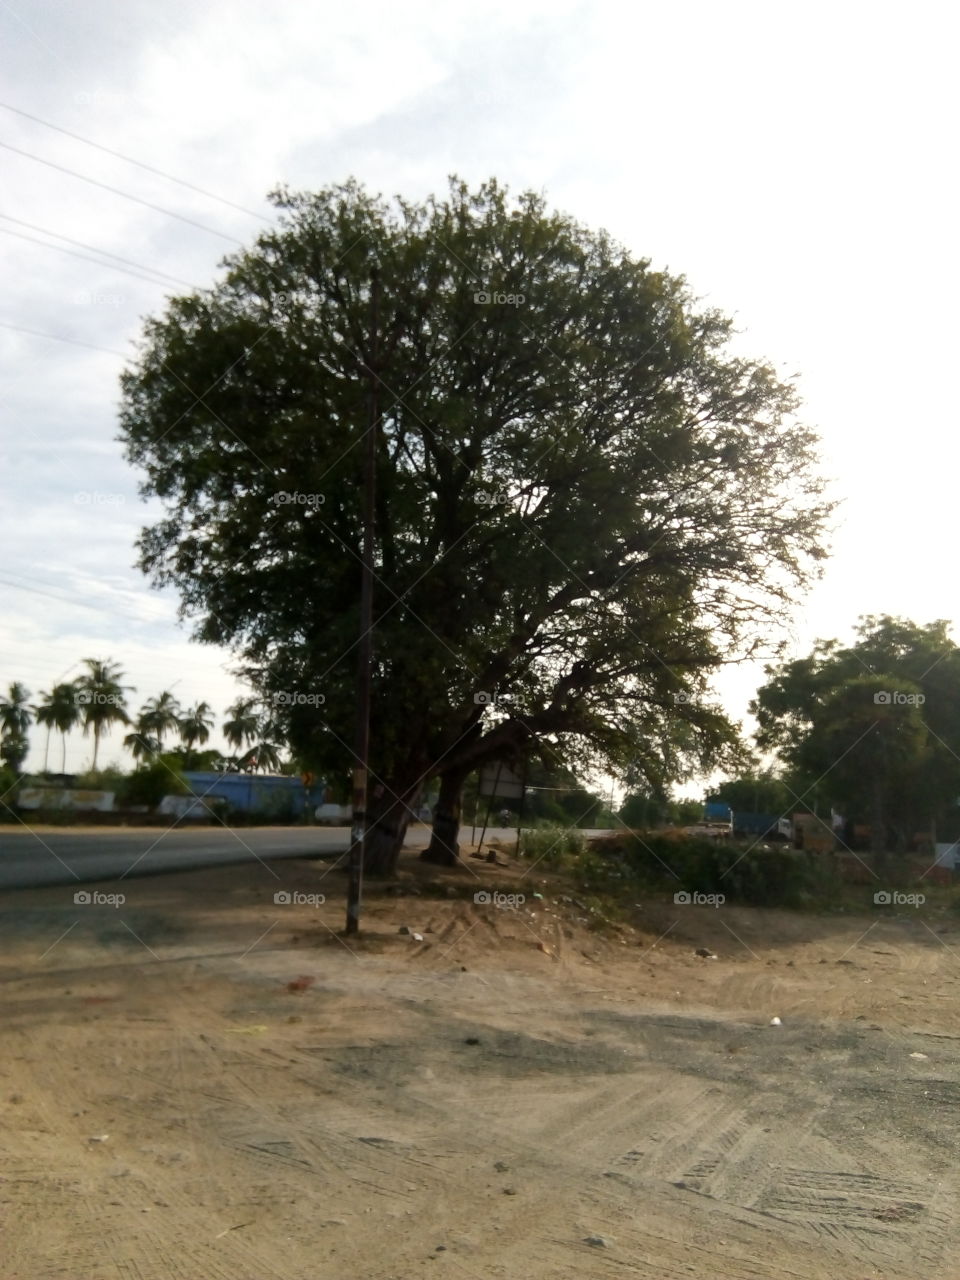 natural tree